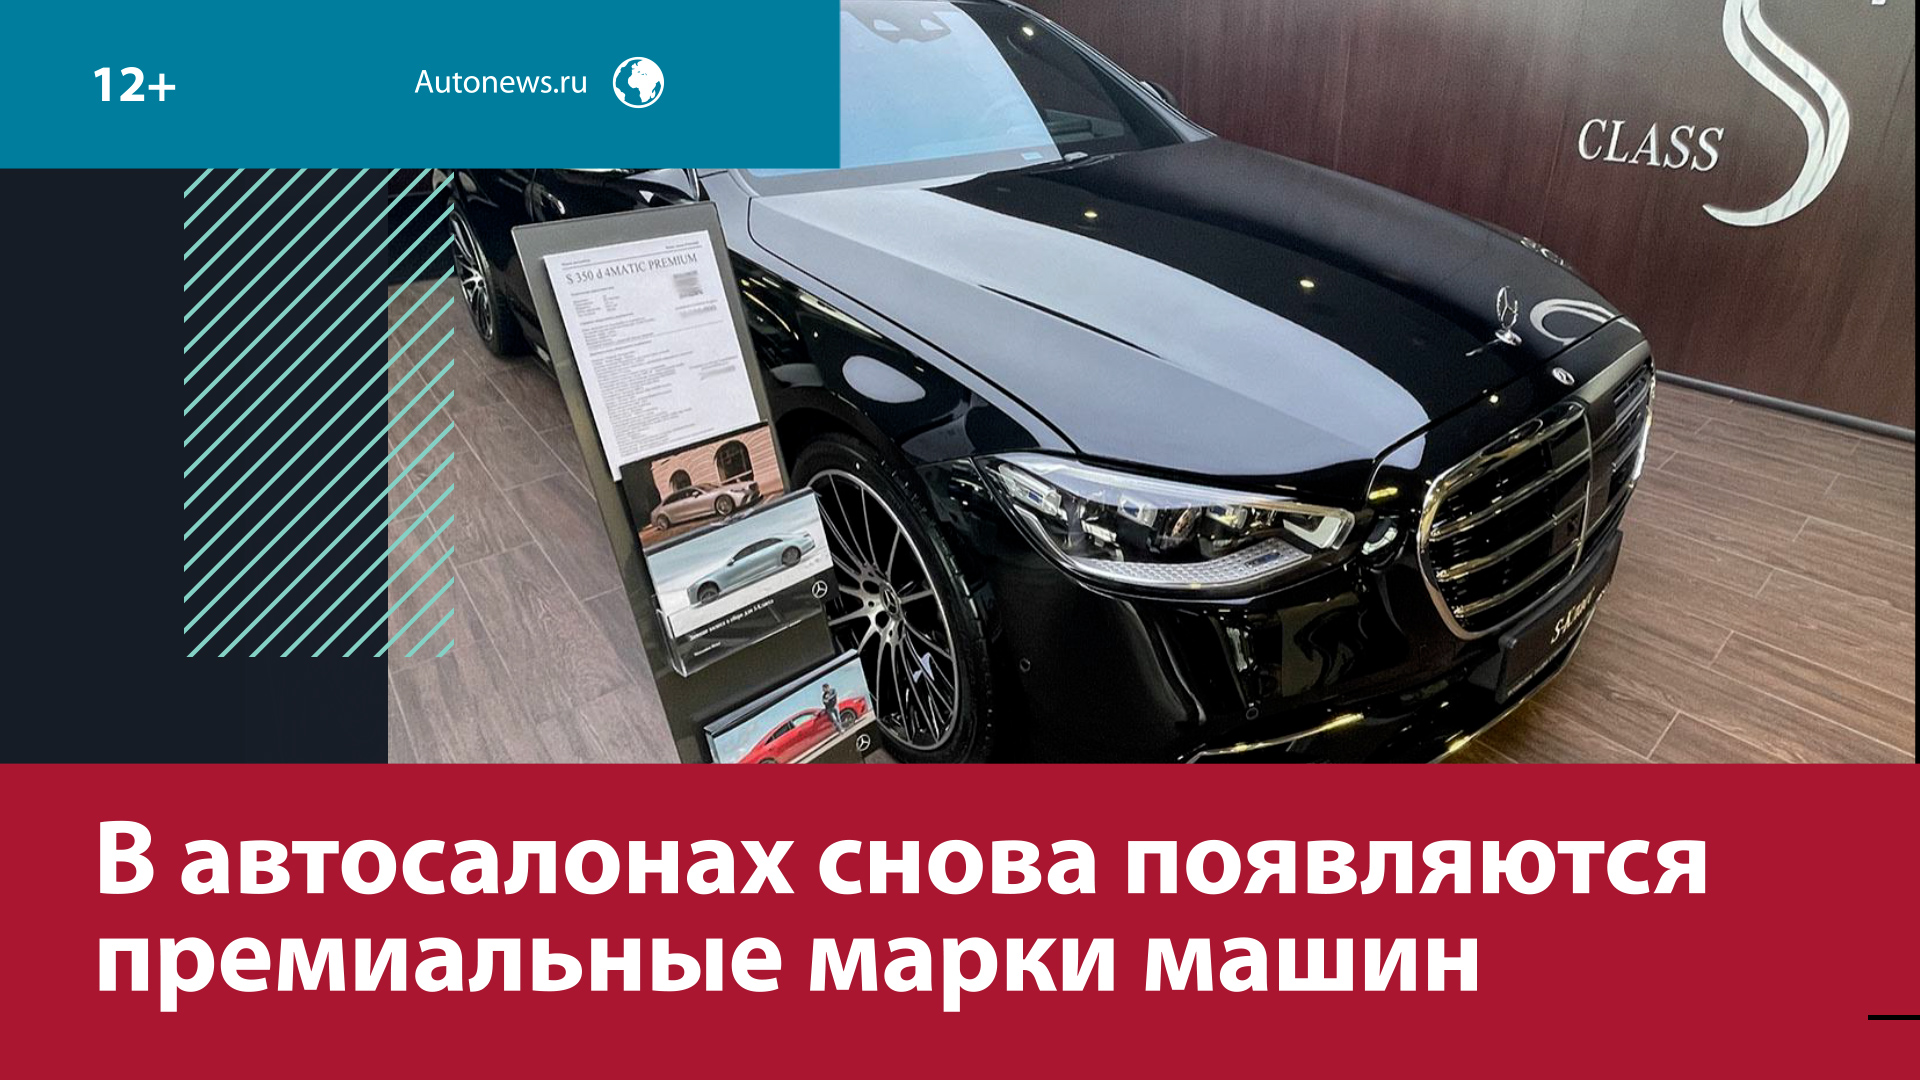 В России уже начали ввозить премиальные машины по параллельному импорту — Москва FM